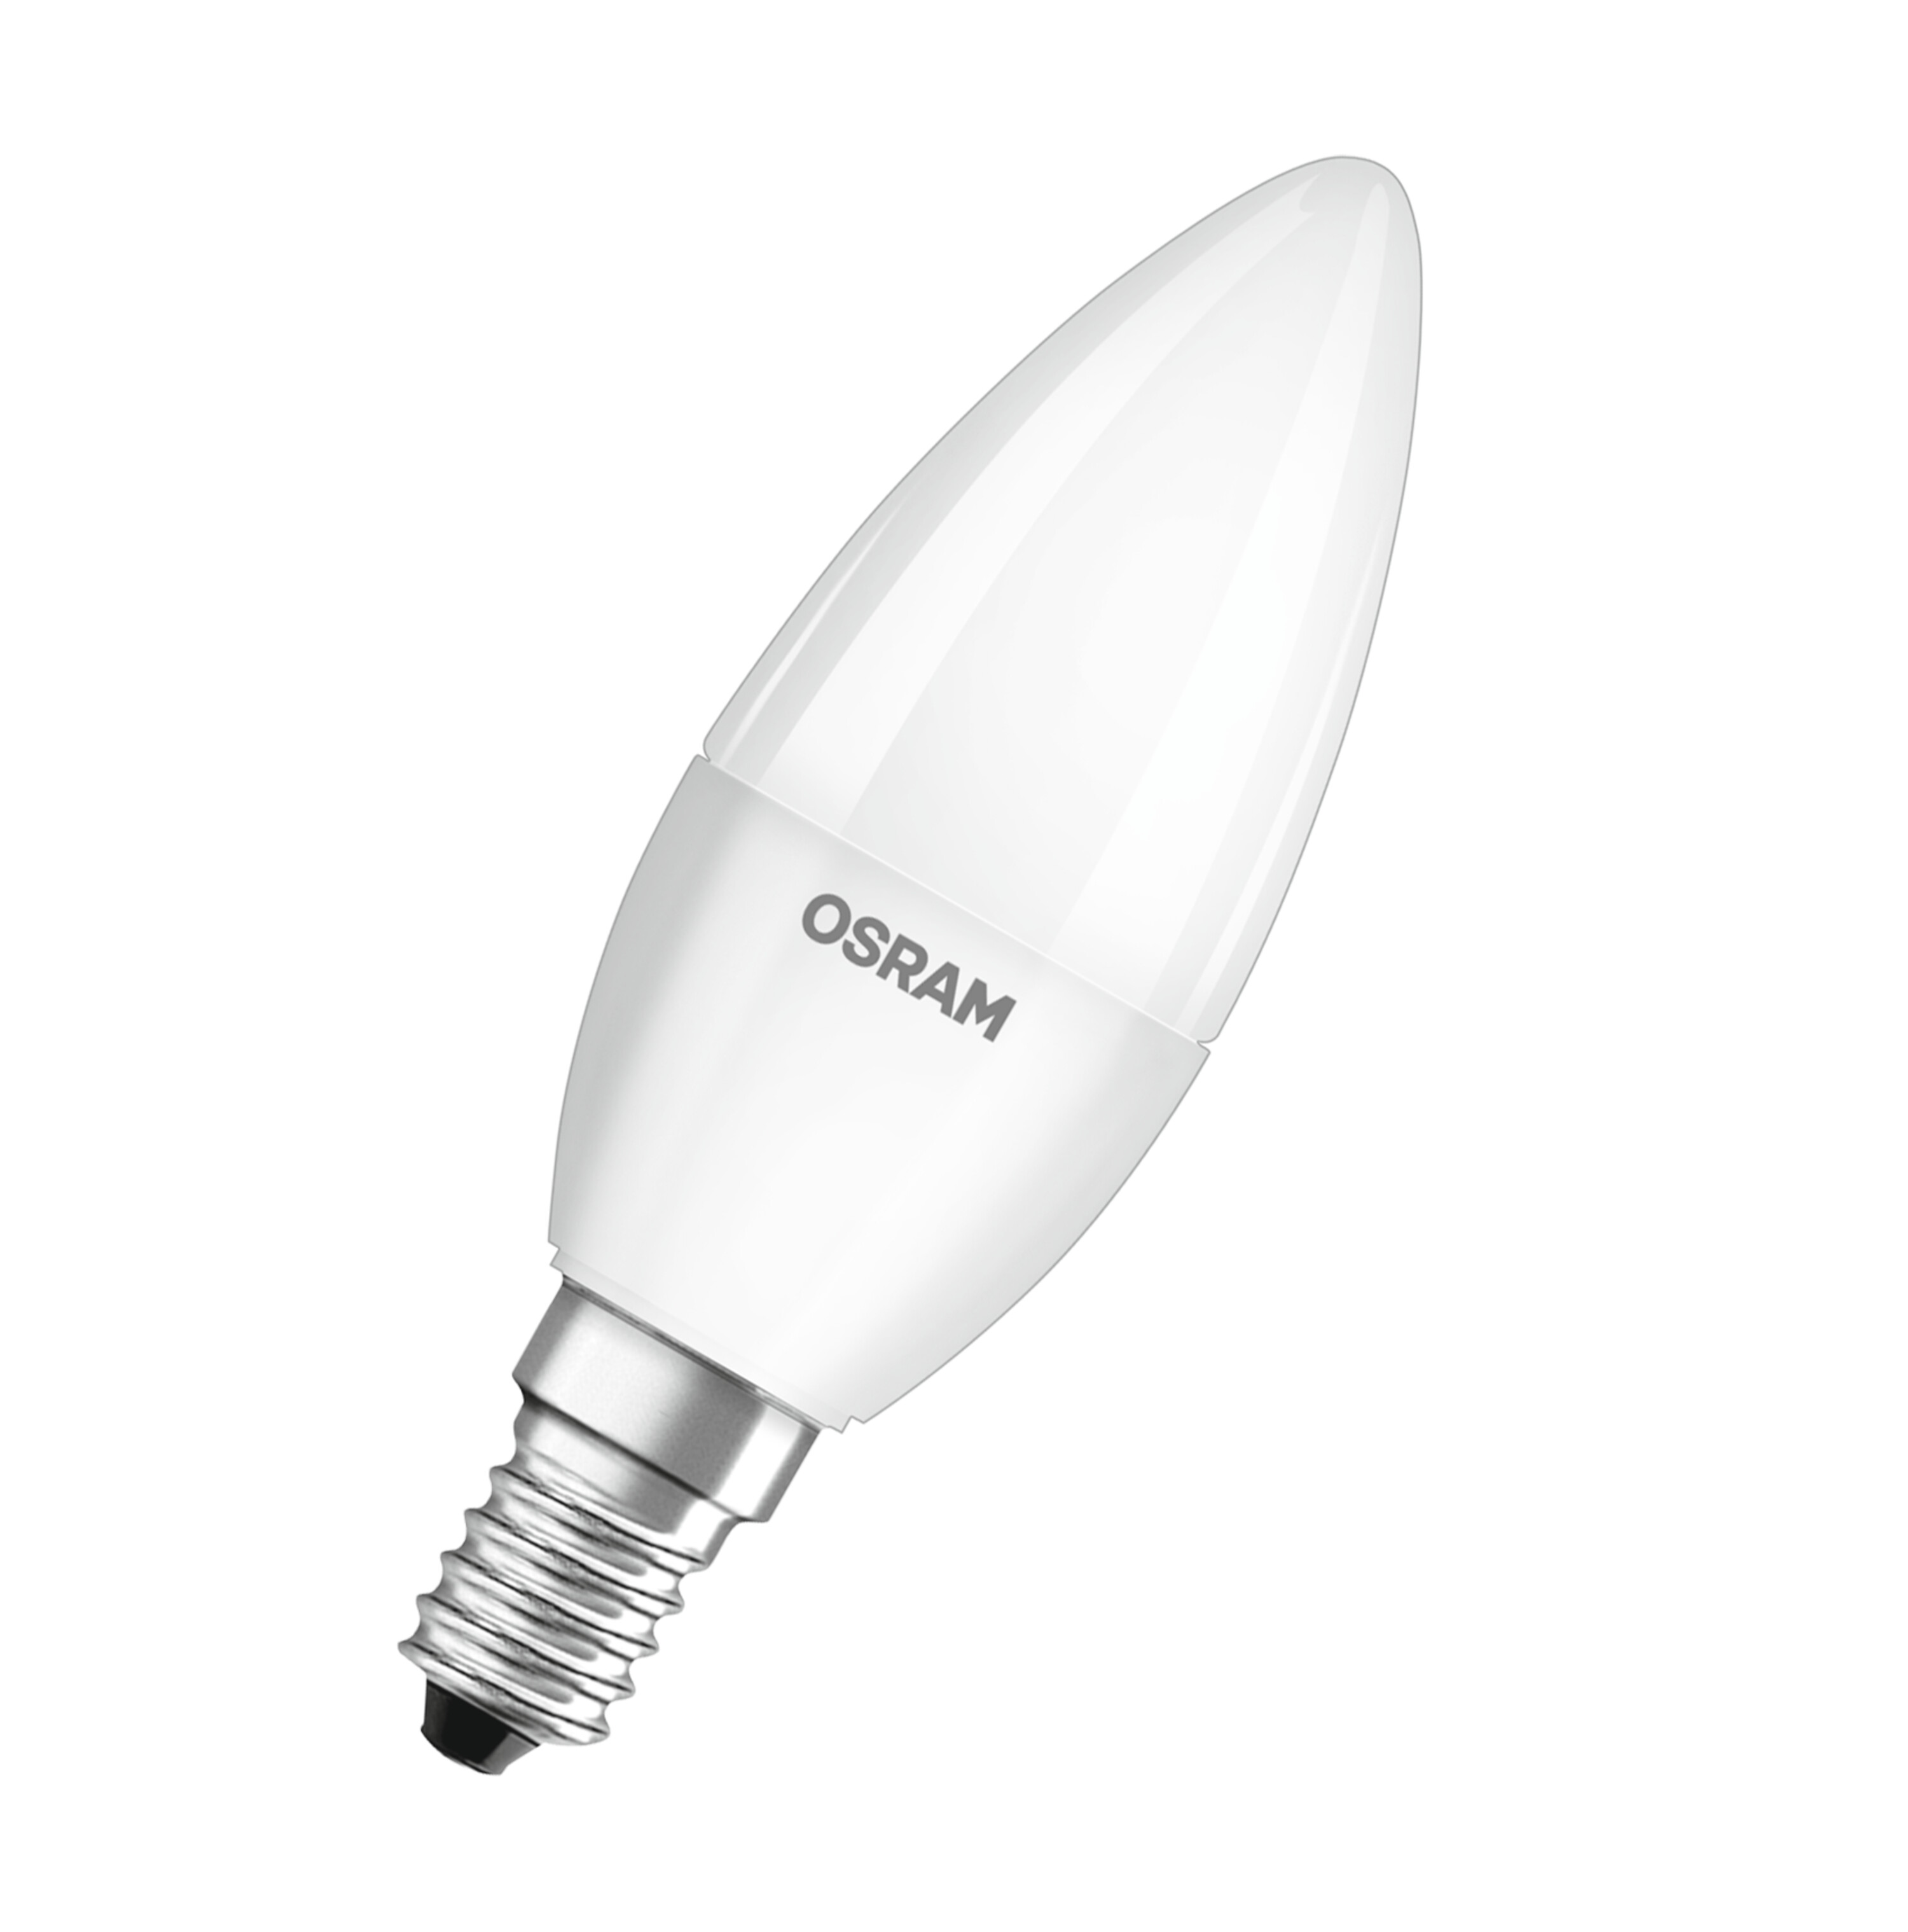 B OSRAM  BASE 470 Kaltweiß LED CLASSIC Lampe lumen LED